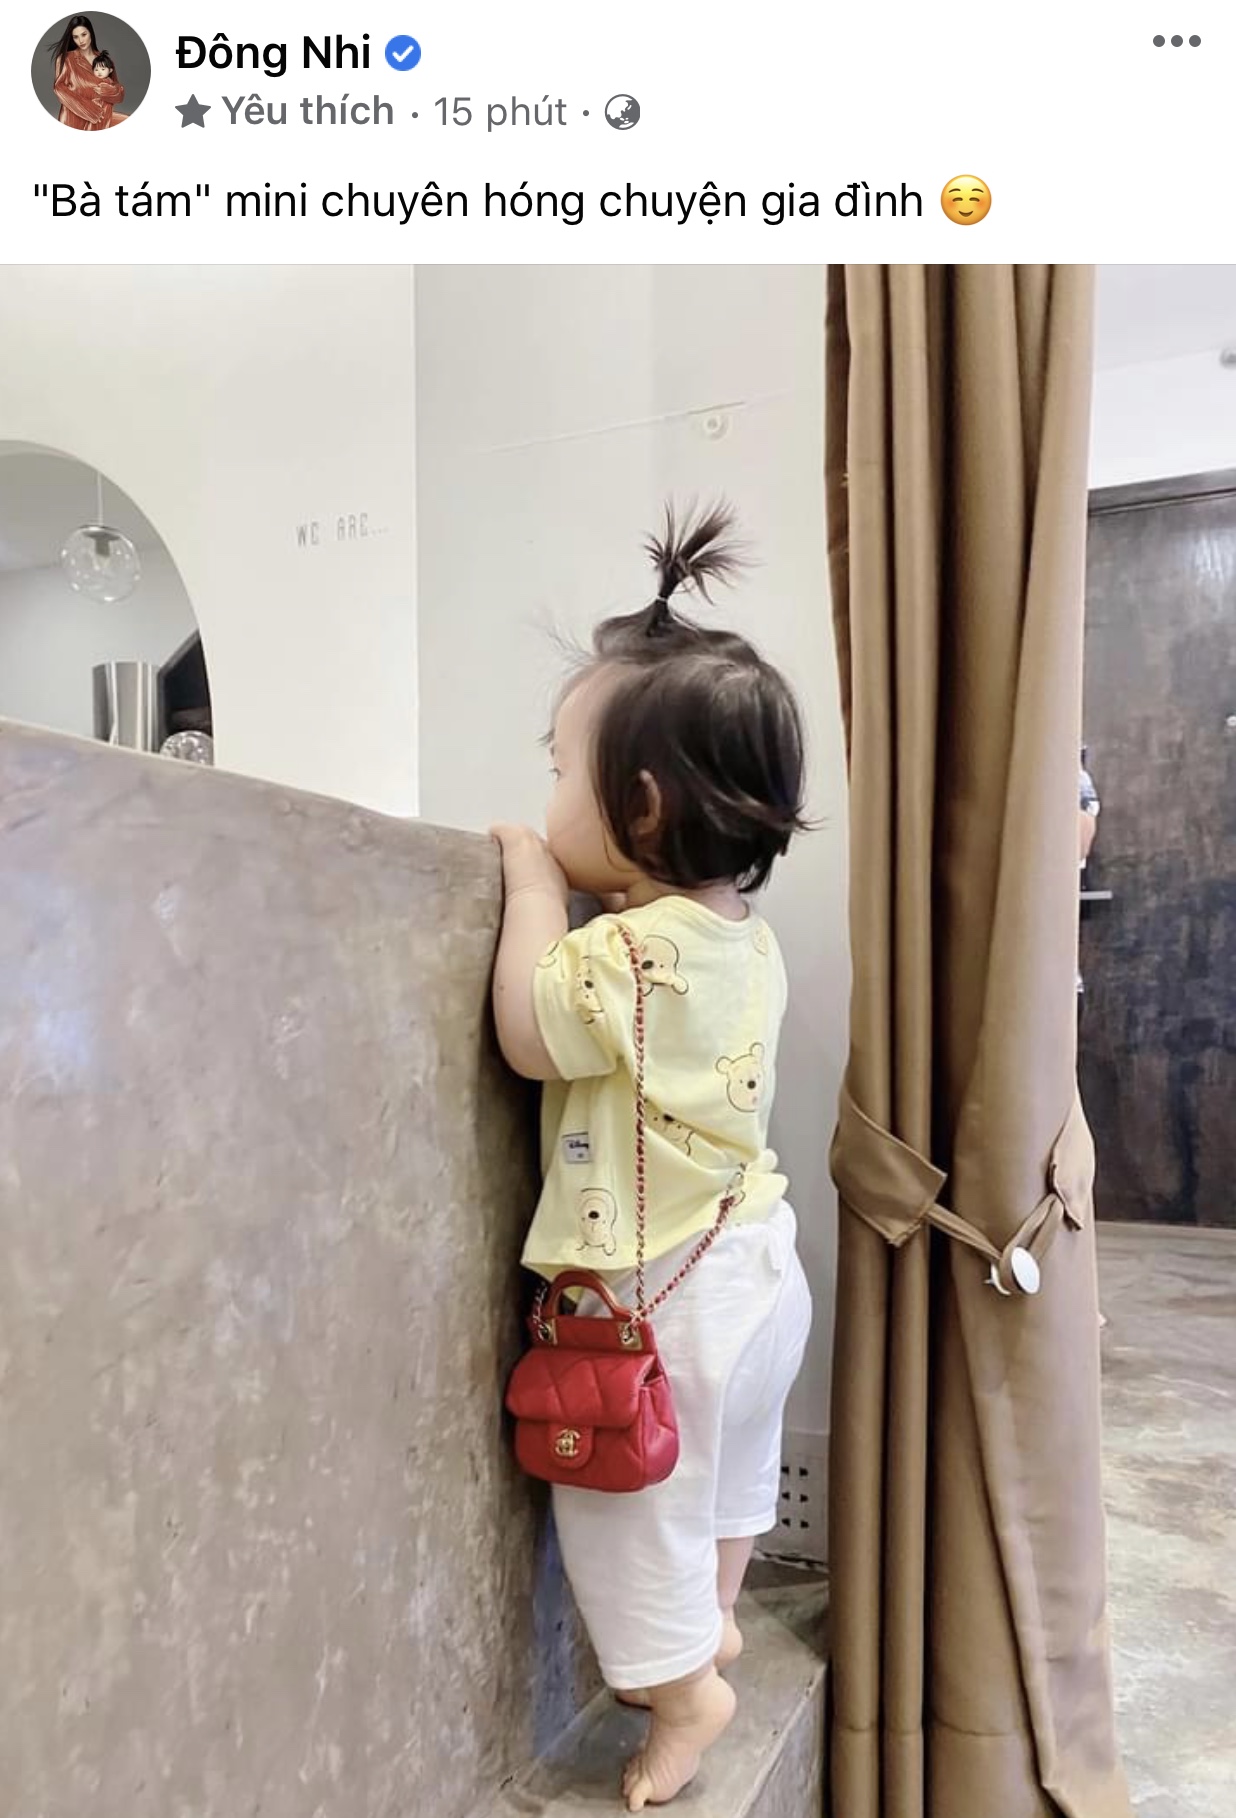 Ái nữ nhà Đông Nhi diện túi hiệu cực chất dù mới hơn 1 tuổi, netizen cười xỉu sự thật đằng sau - Ảnh 1